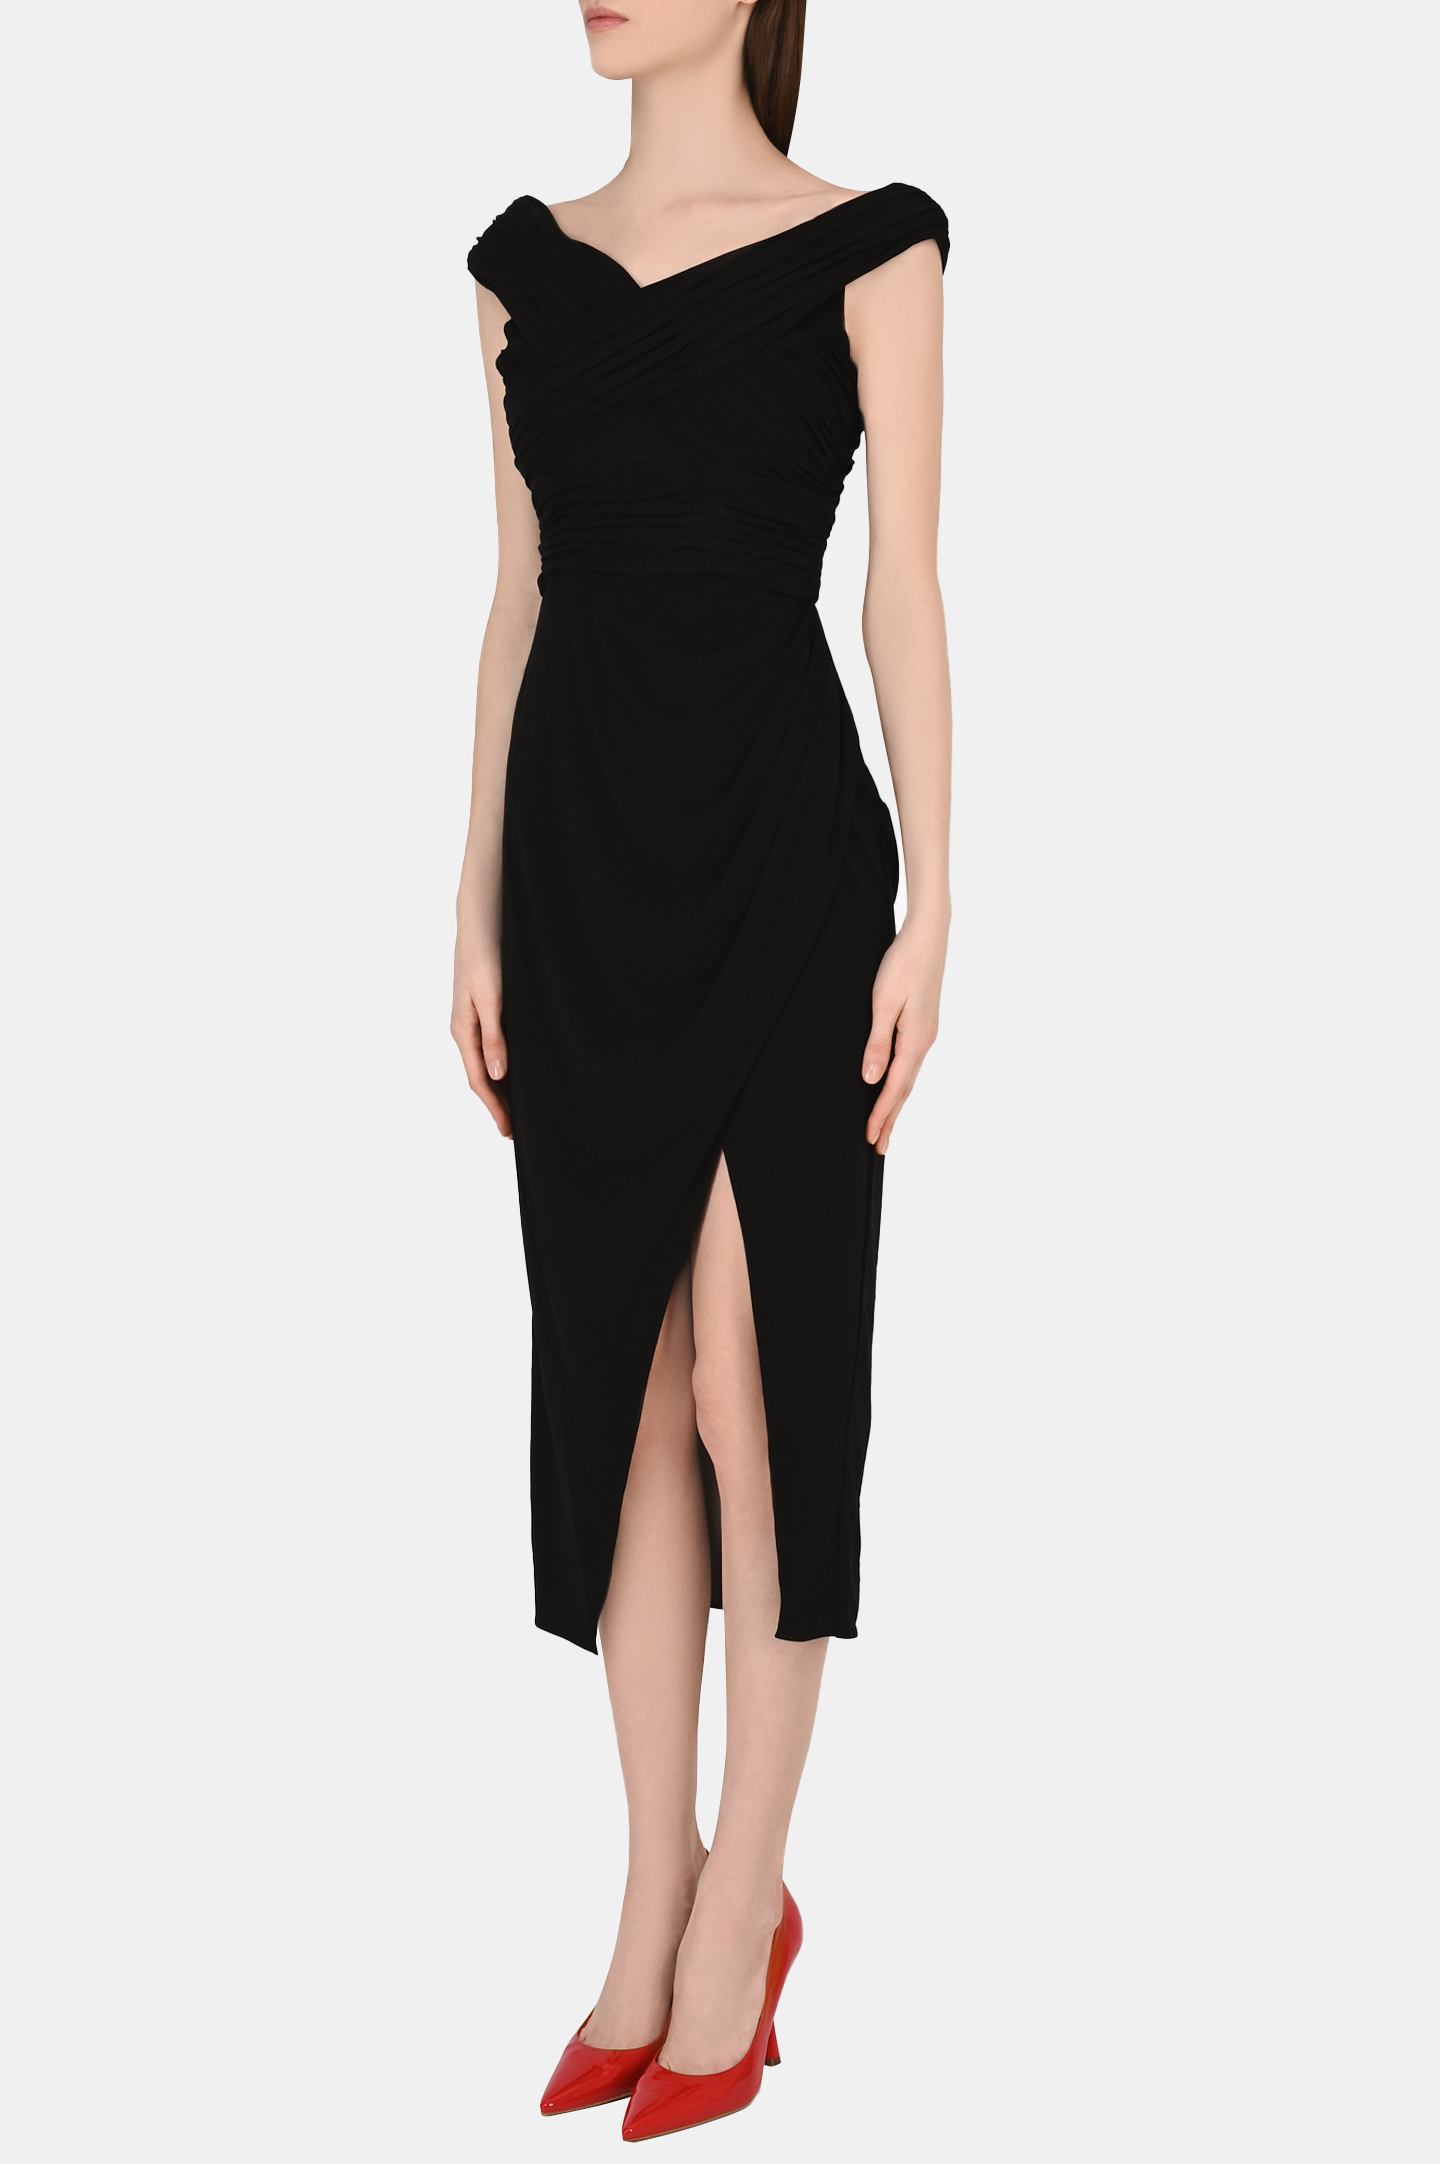 Платье SELF PORTRAIT RS22-110, цвет: Черный, Женский